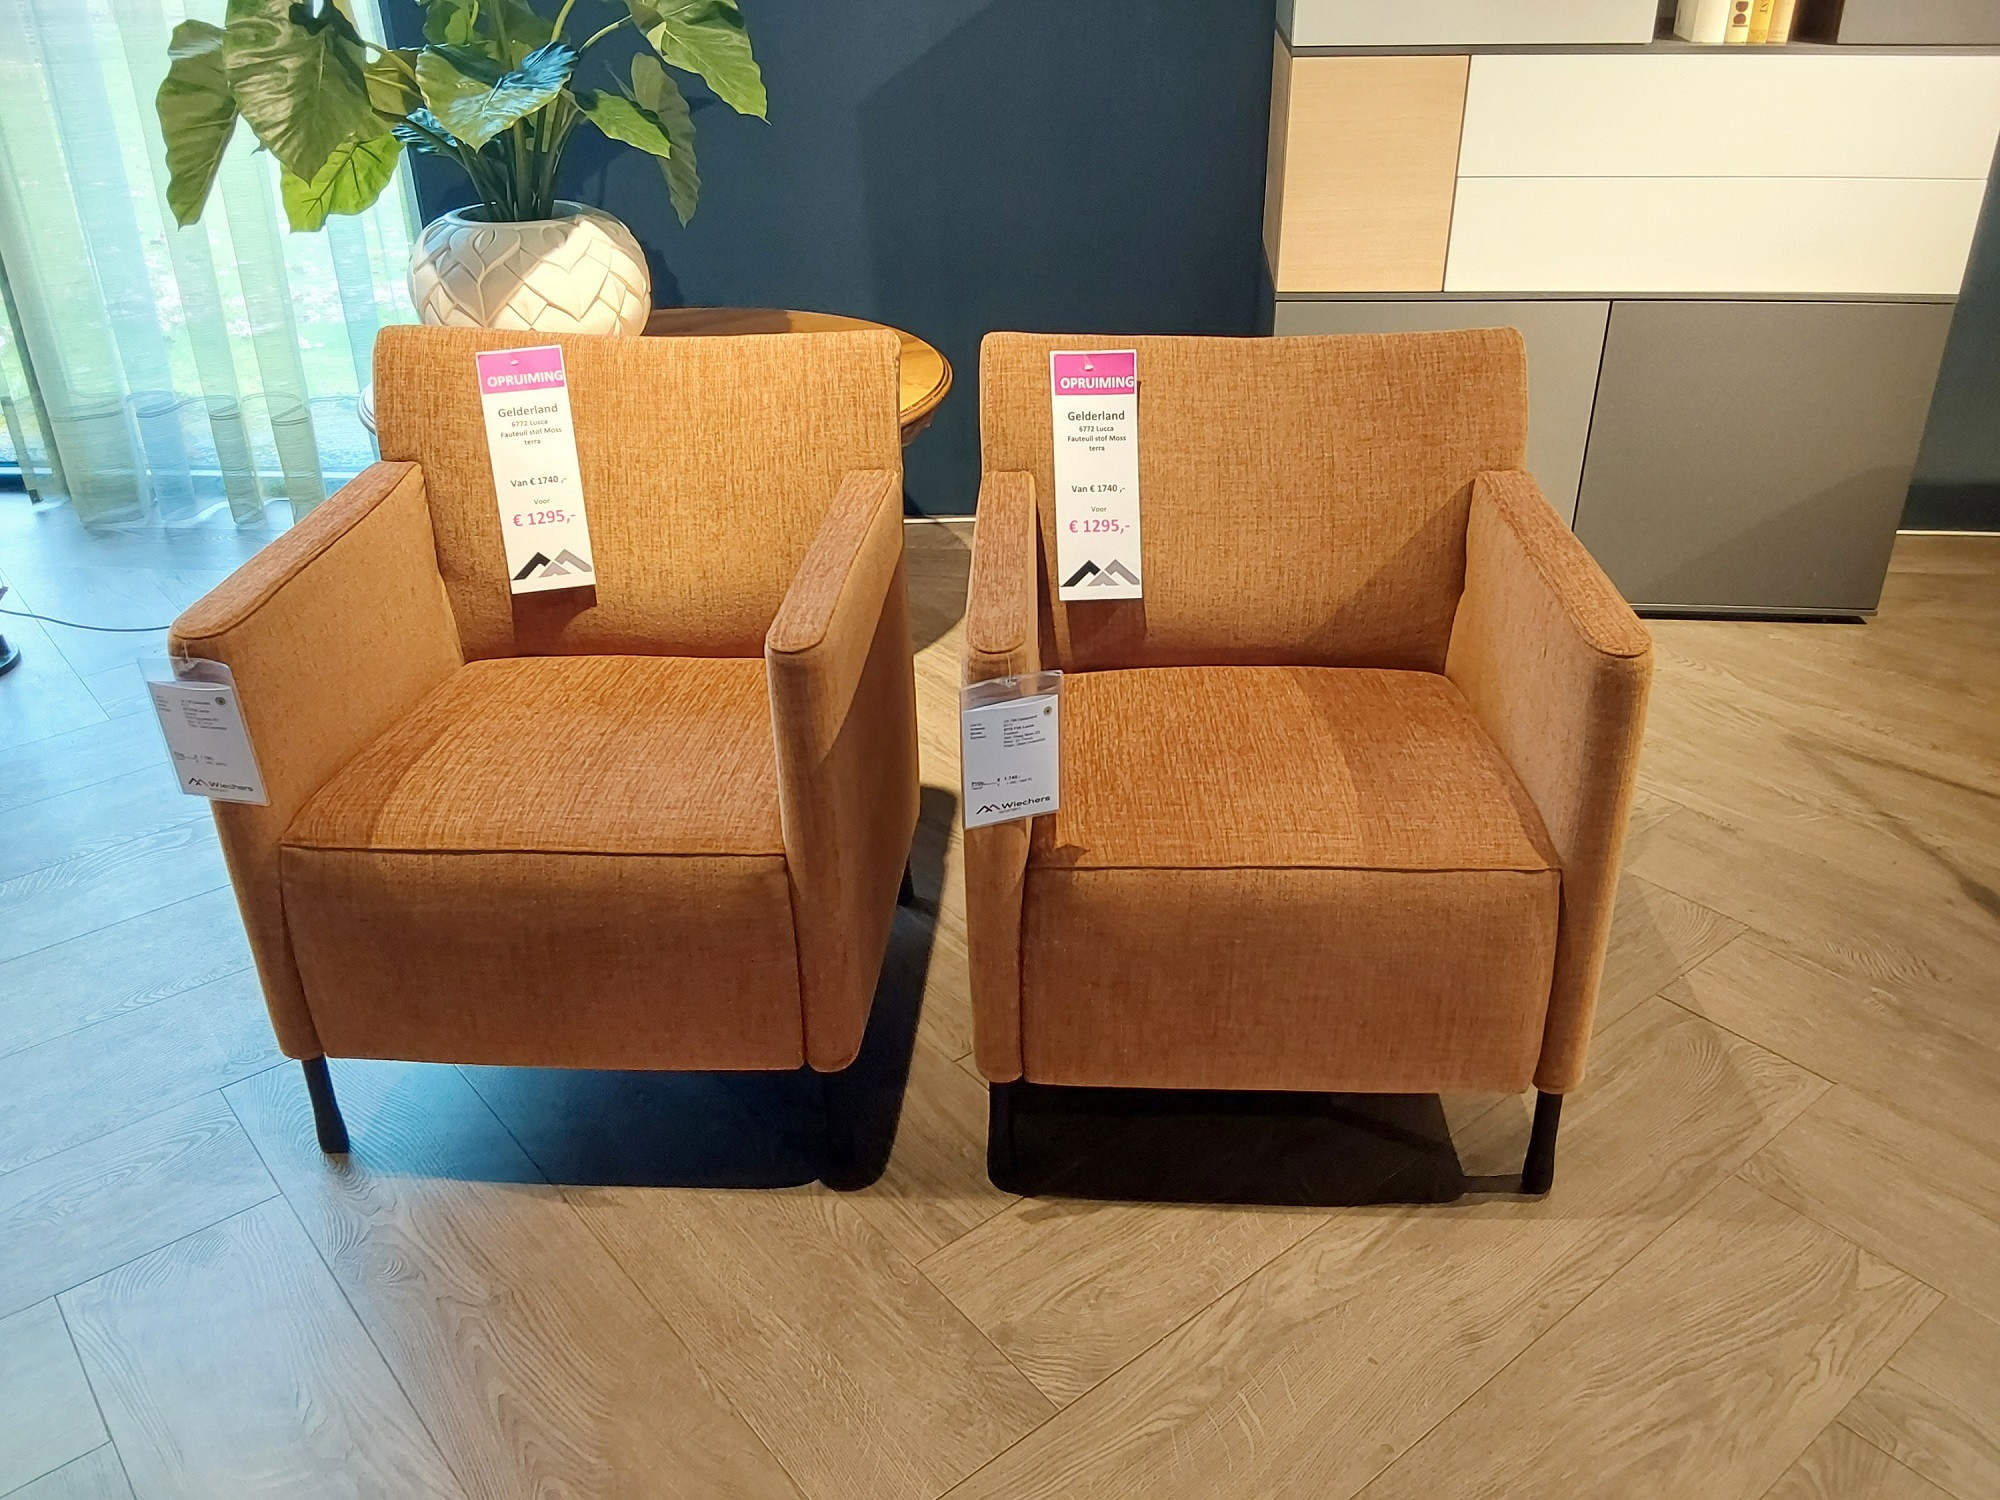 Ziektecijfers Overtuiging logboek Gelderland Lucca fauteuils Opruiming, Wiechers Wonen